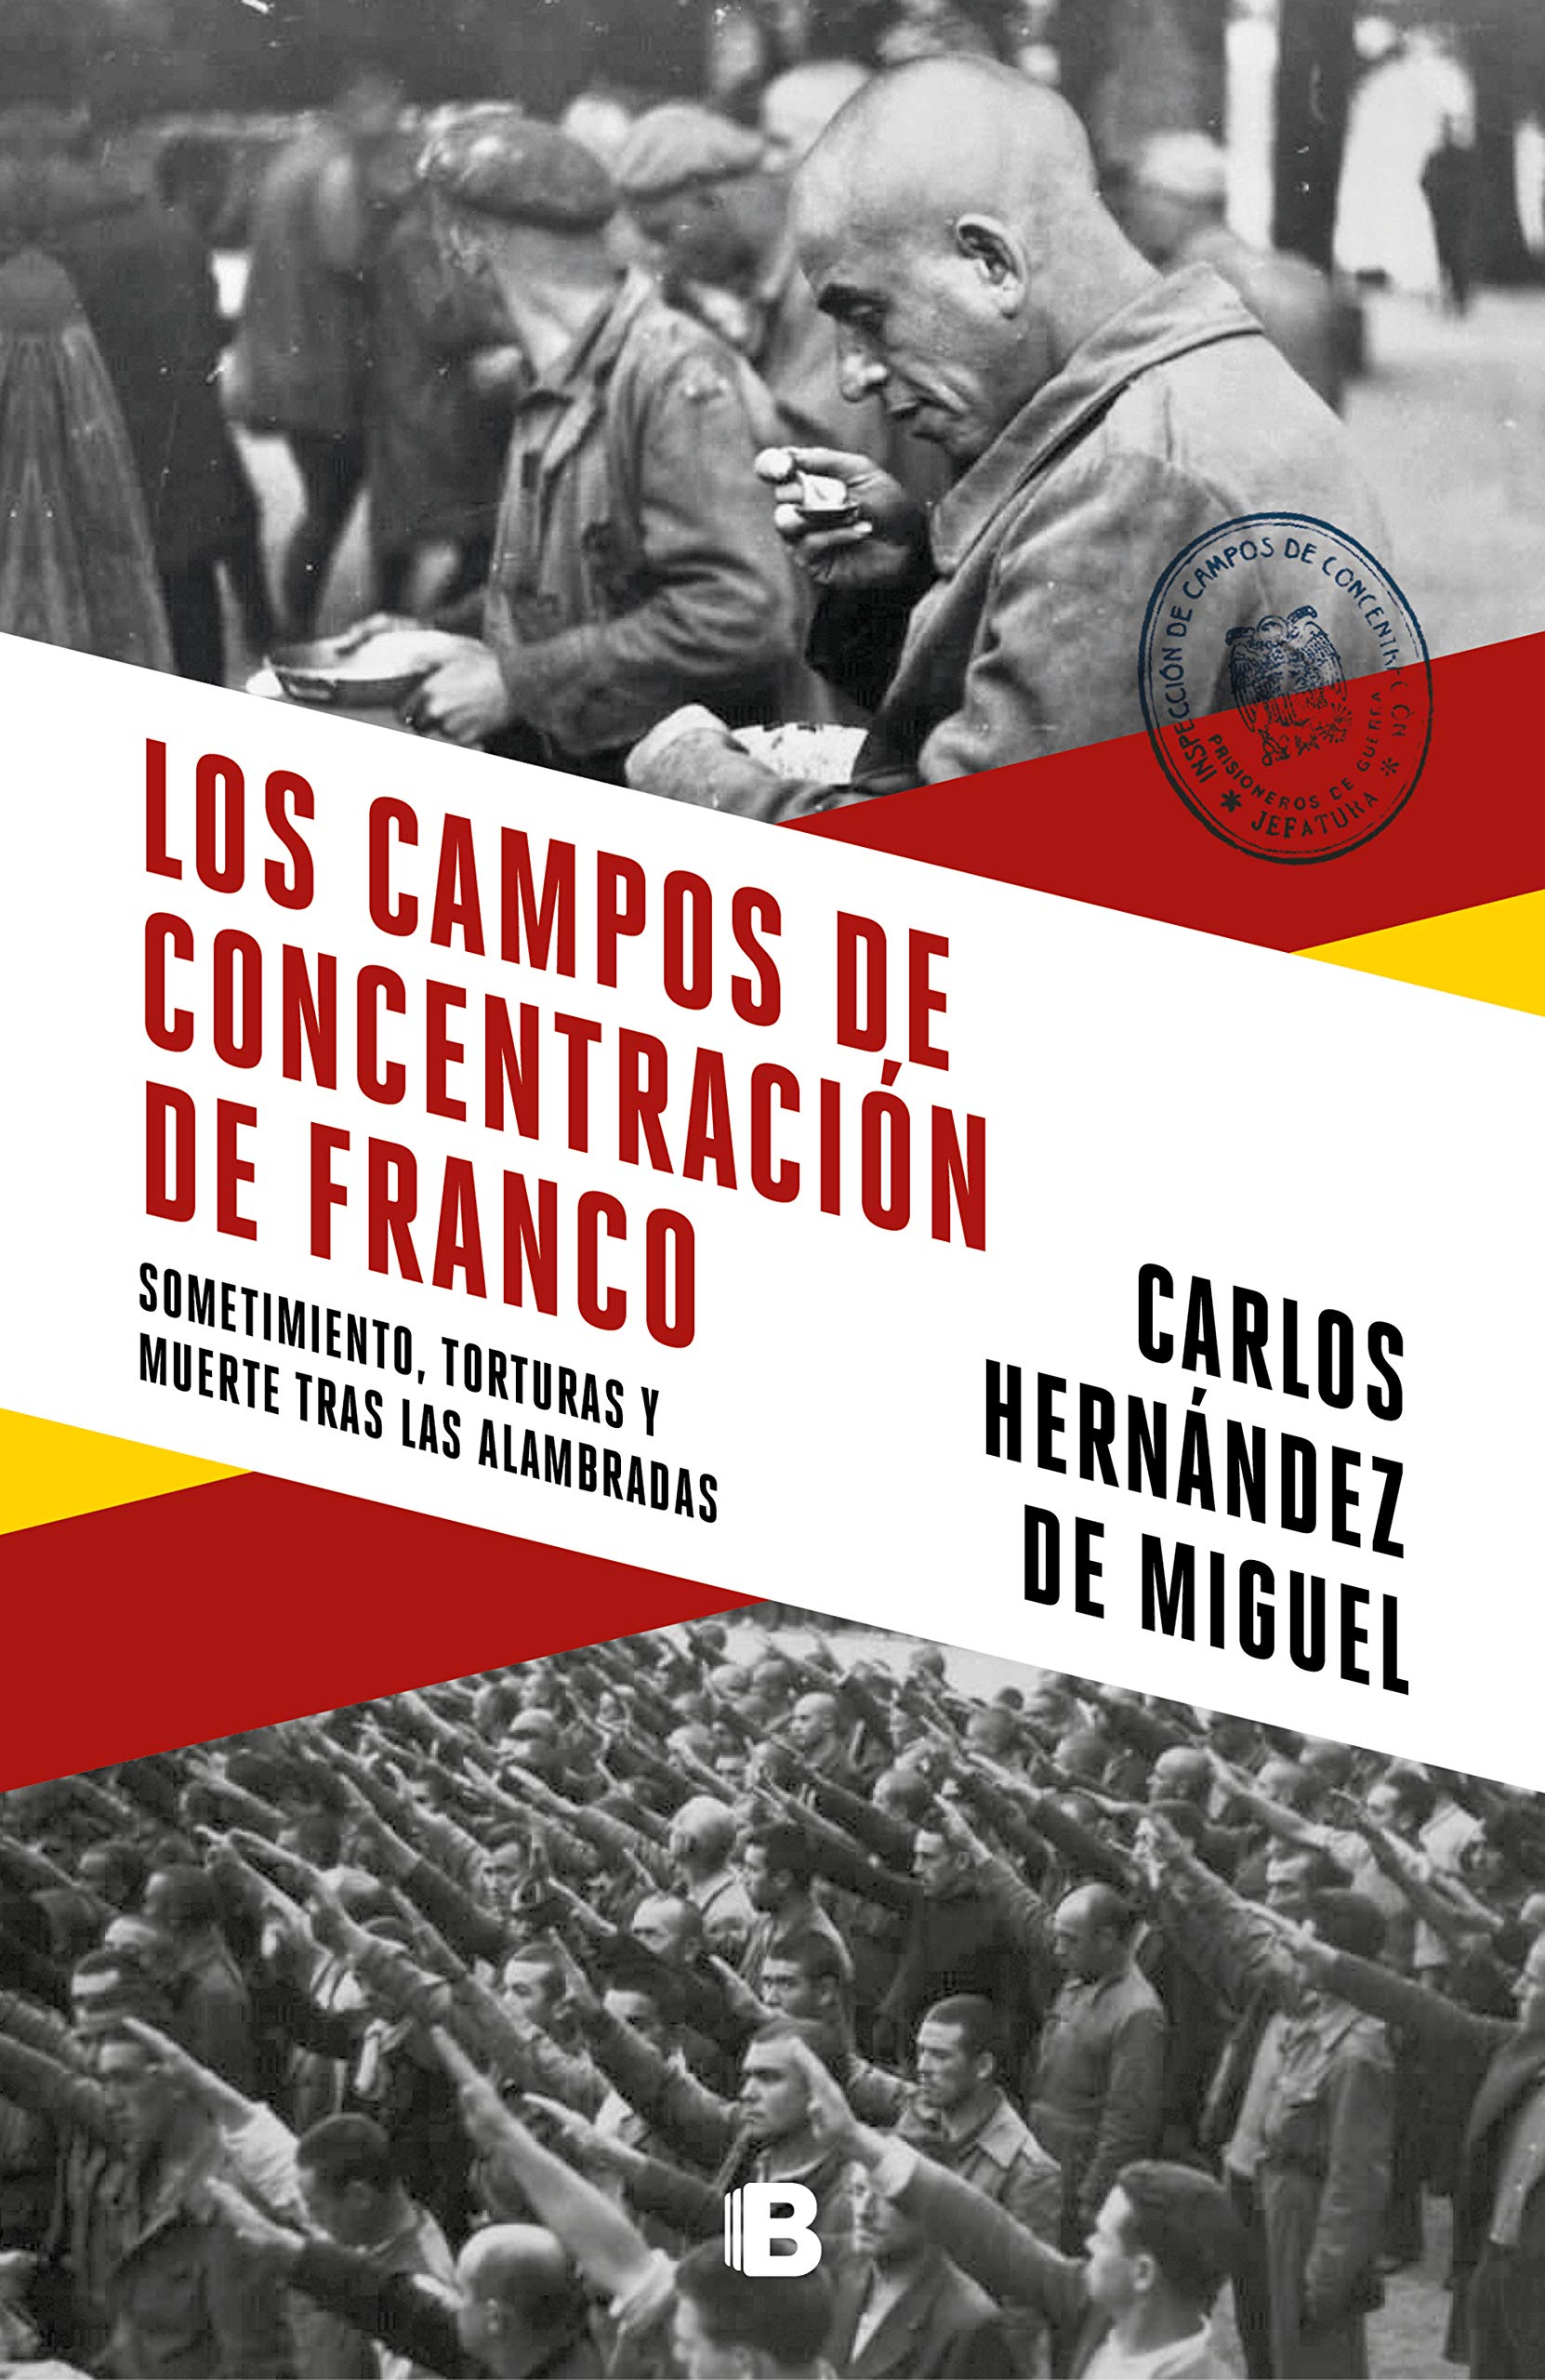 Los campos de concentración de Franco